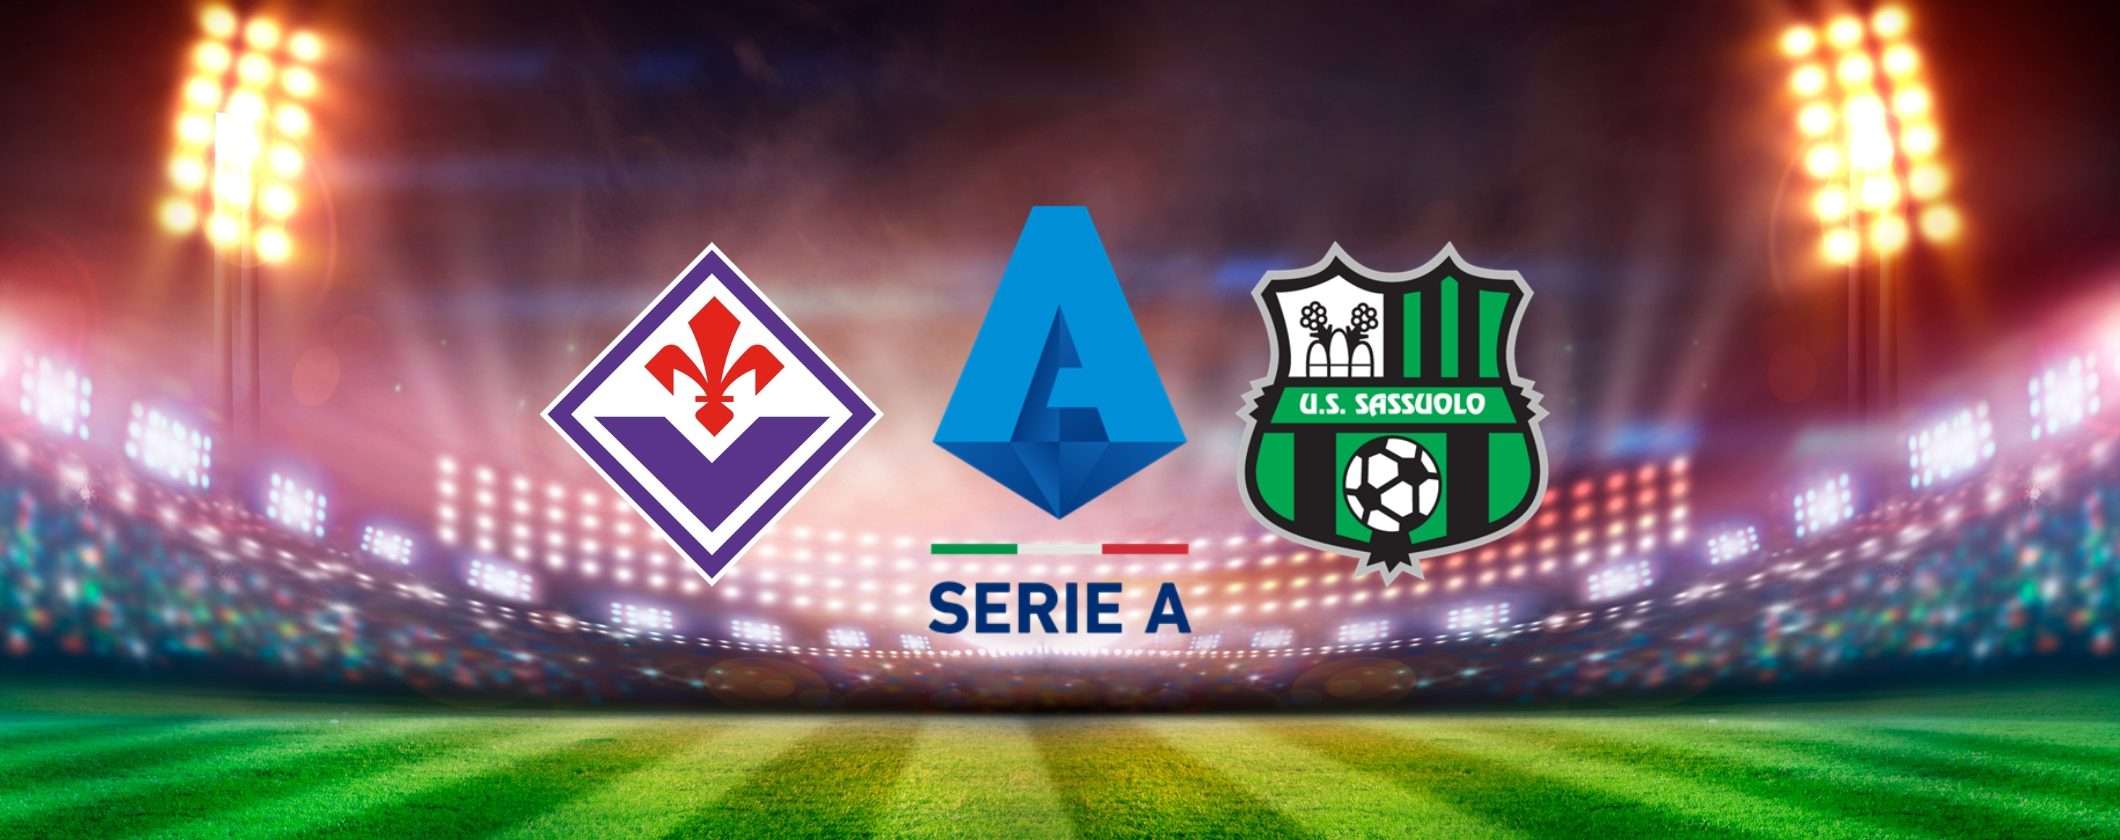 Come vedere Fiorentina-Sassuolo in streaming dall'estero